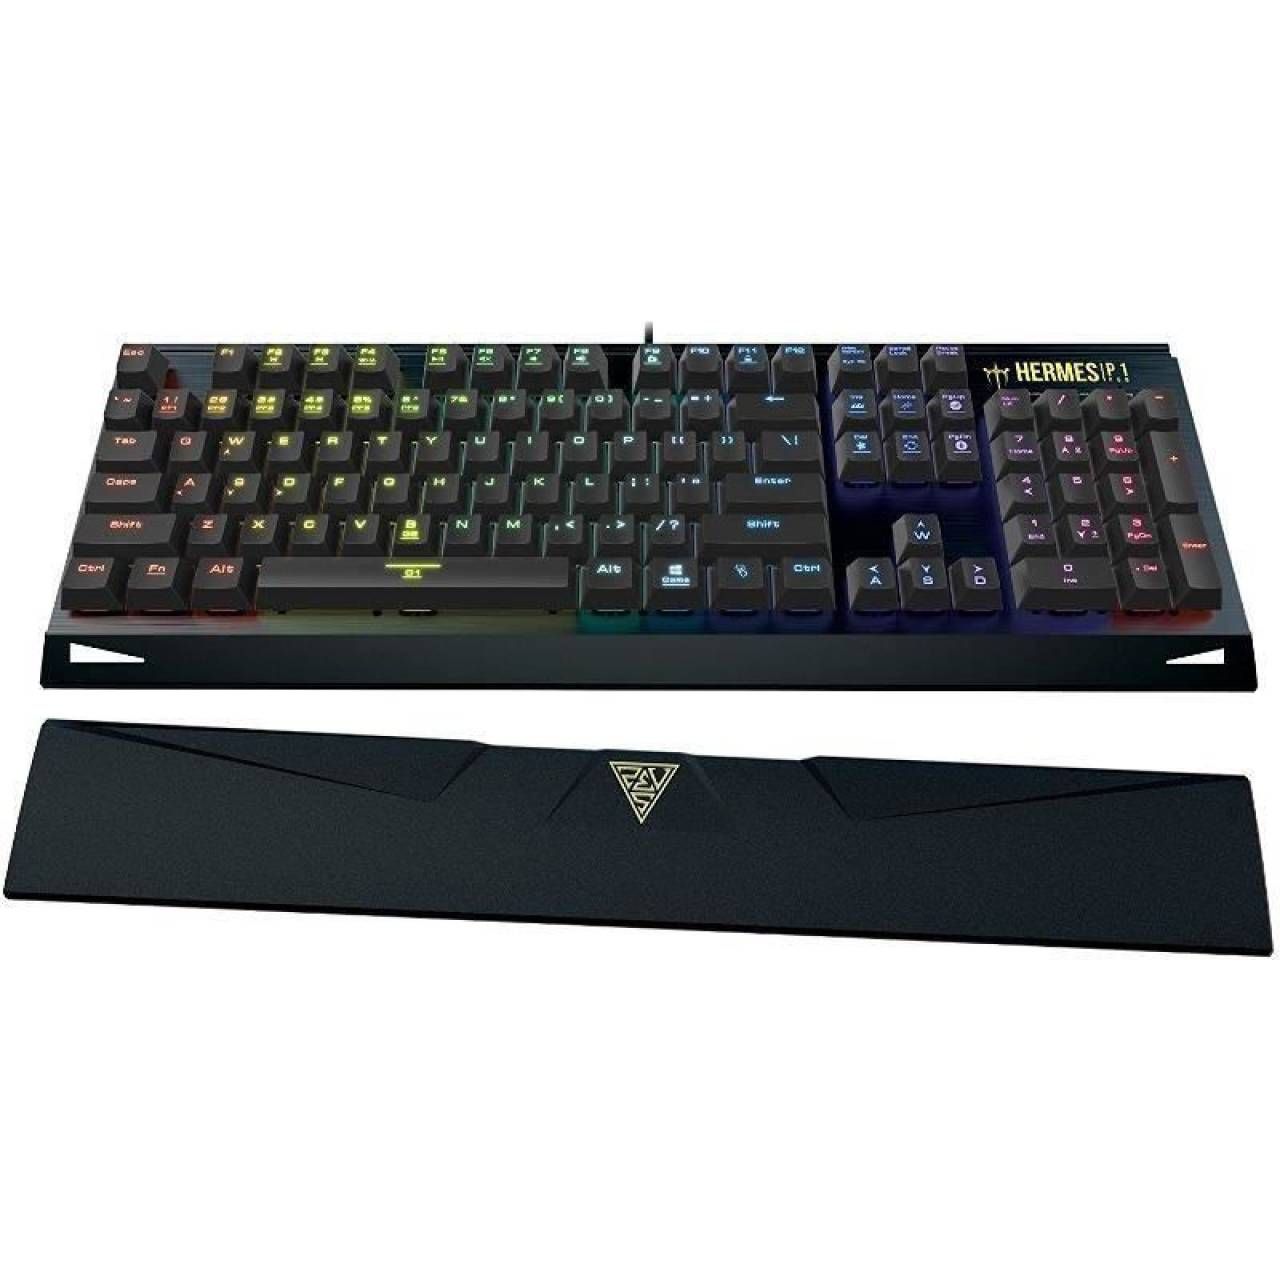 Tastatura gaming mecanica Gamdias Hermes P1 neagra iluminare RGB